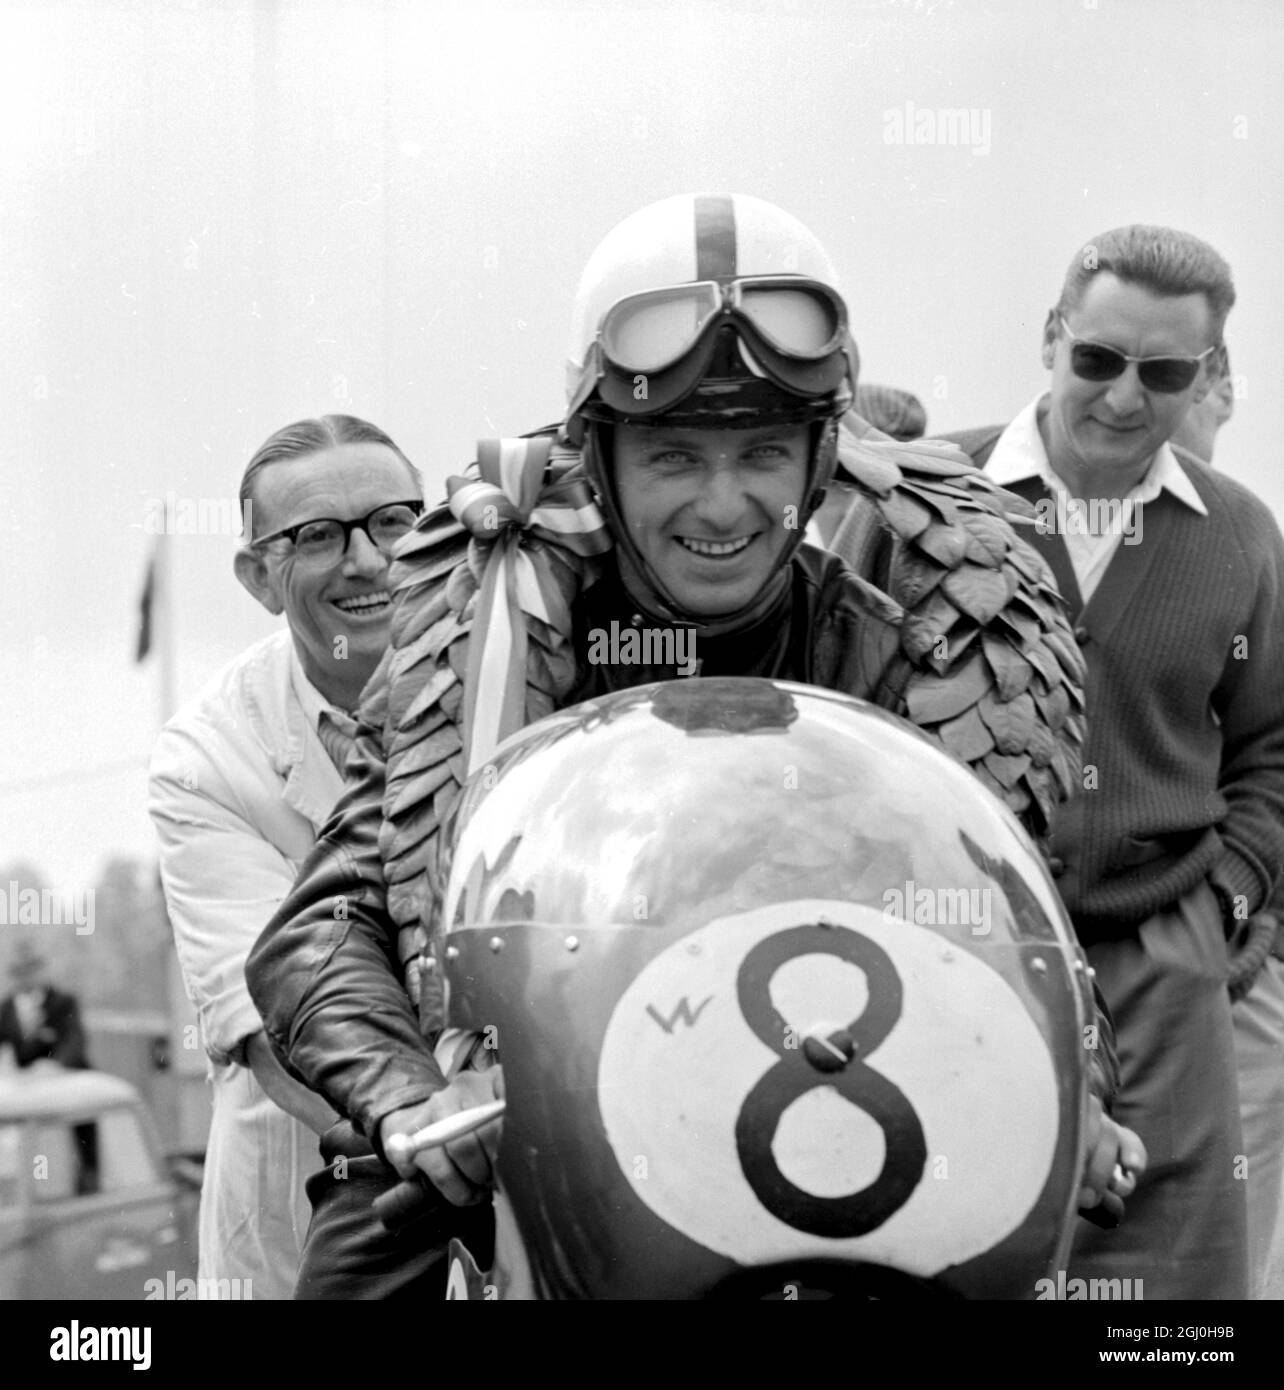 Brands Hatch, Kent: Gara motociclistica tedesca, Ernst Degner ha un sorriso di vittoria dopo aver guidato il suo giapponese Suzuki a trionfare nell'evento 50 C.C. alla Brands Hatch International Motor cycle Race. È andata al circuito del Grand prix di 2.65 miglia in 2 min. 16 secondi ad una velocità media di 70.14 miglia all'ora. 11 giugno 1962 Foto Stock